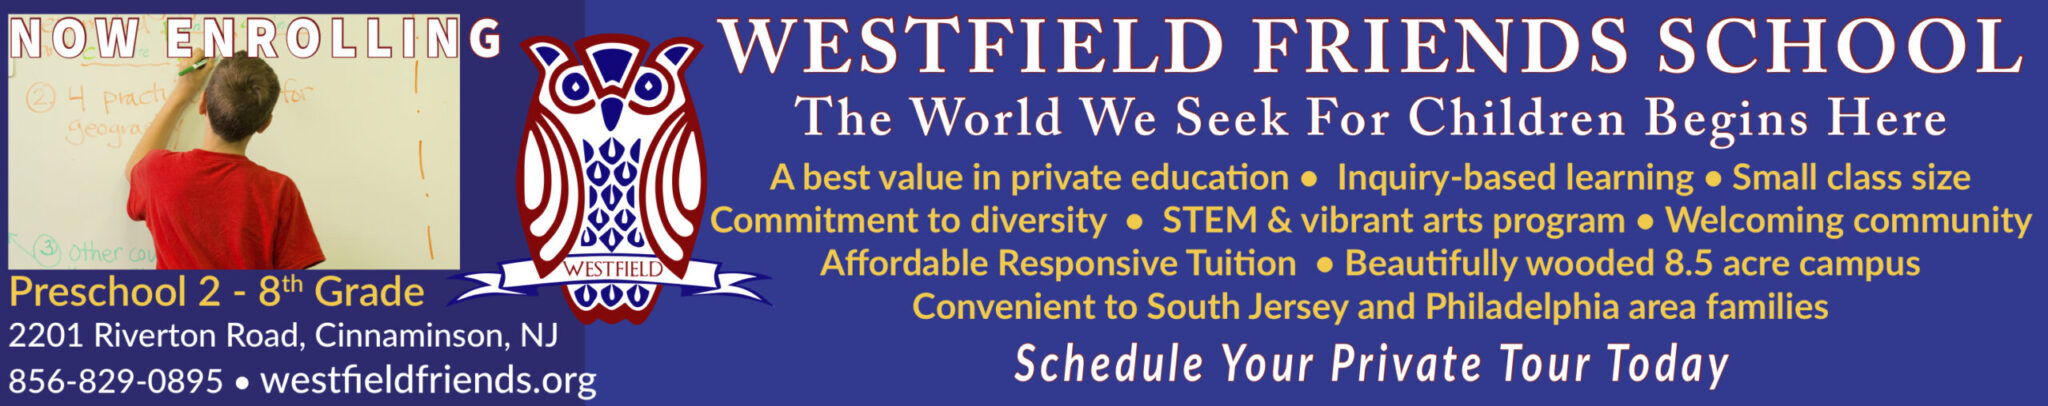 Westfield Friends School